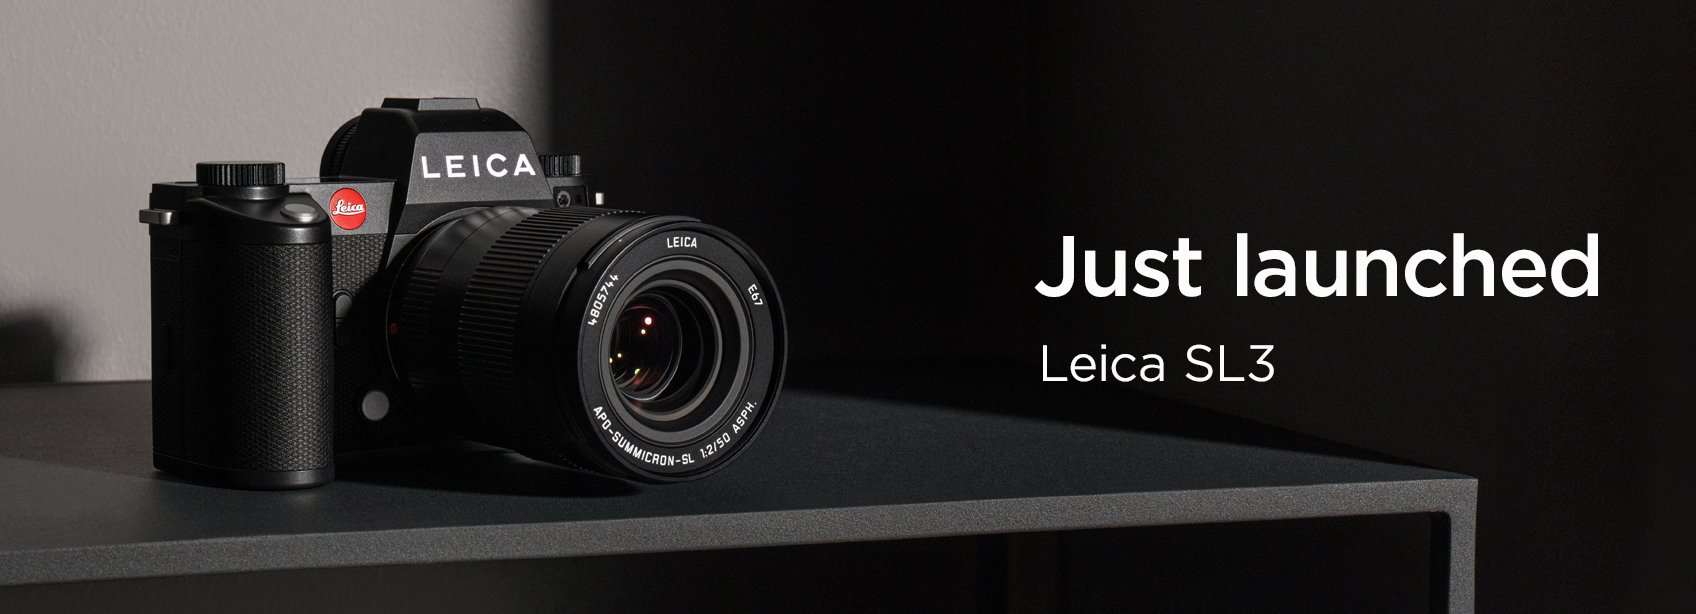 Leica-SL3Launch-H-060324.jpg